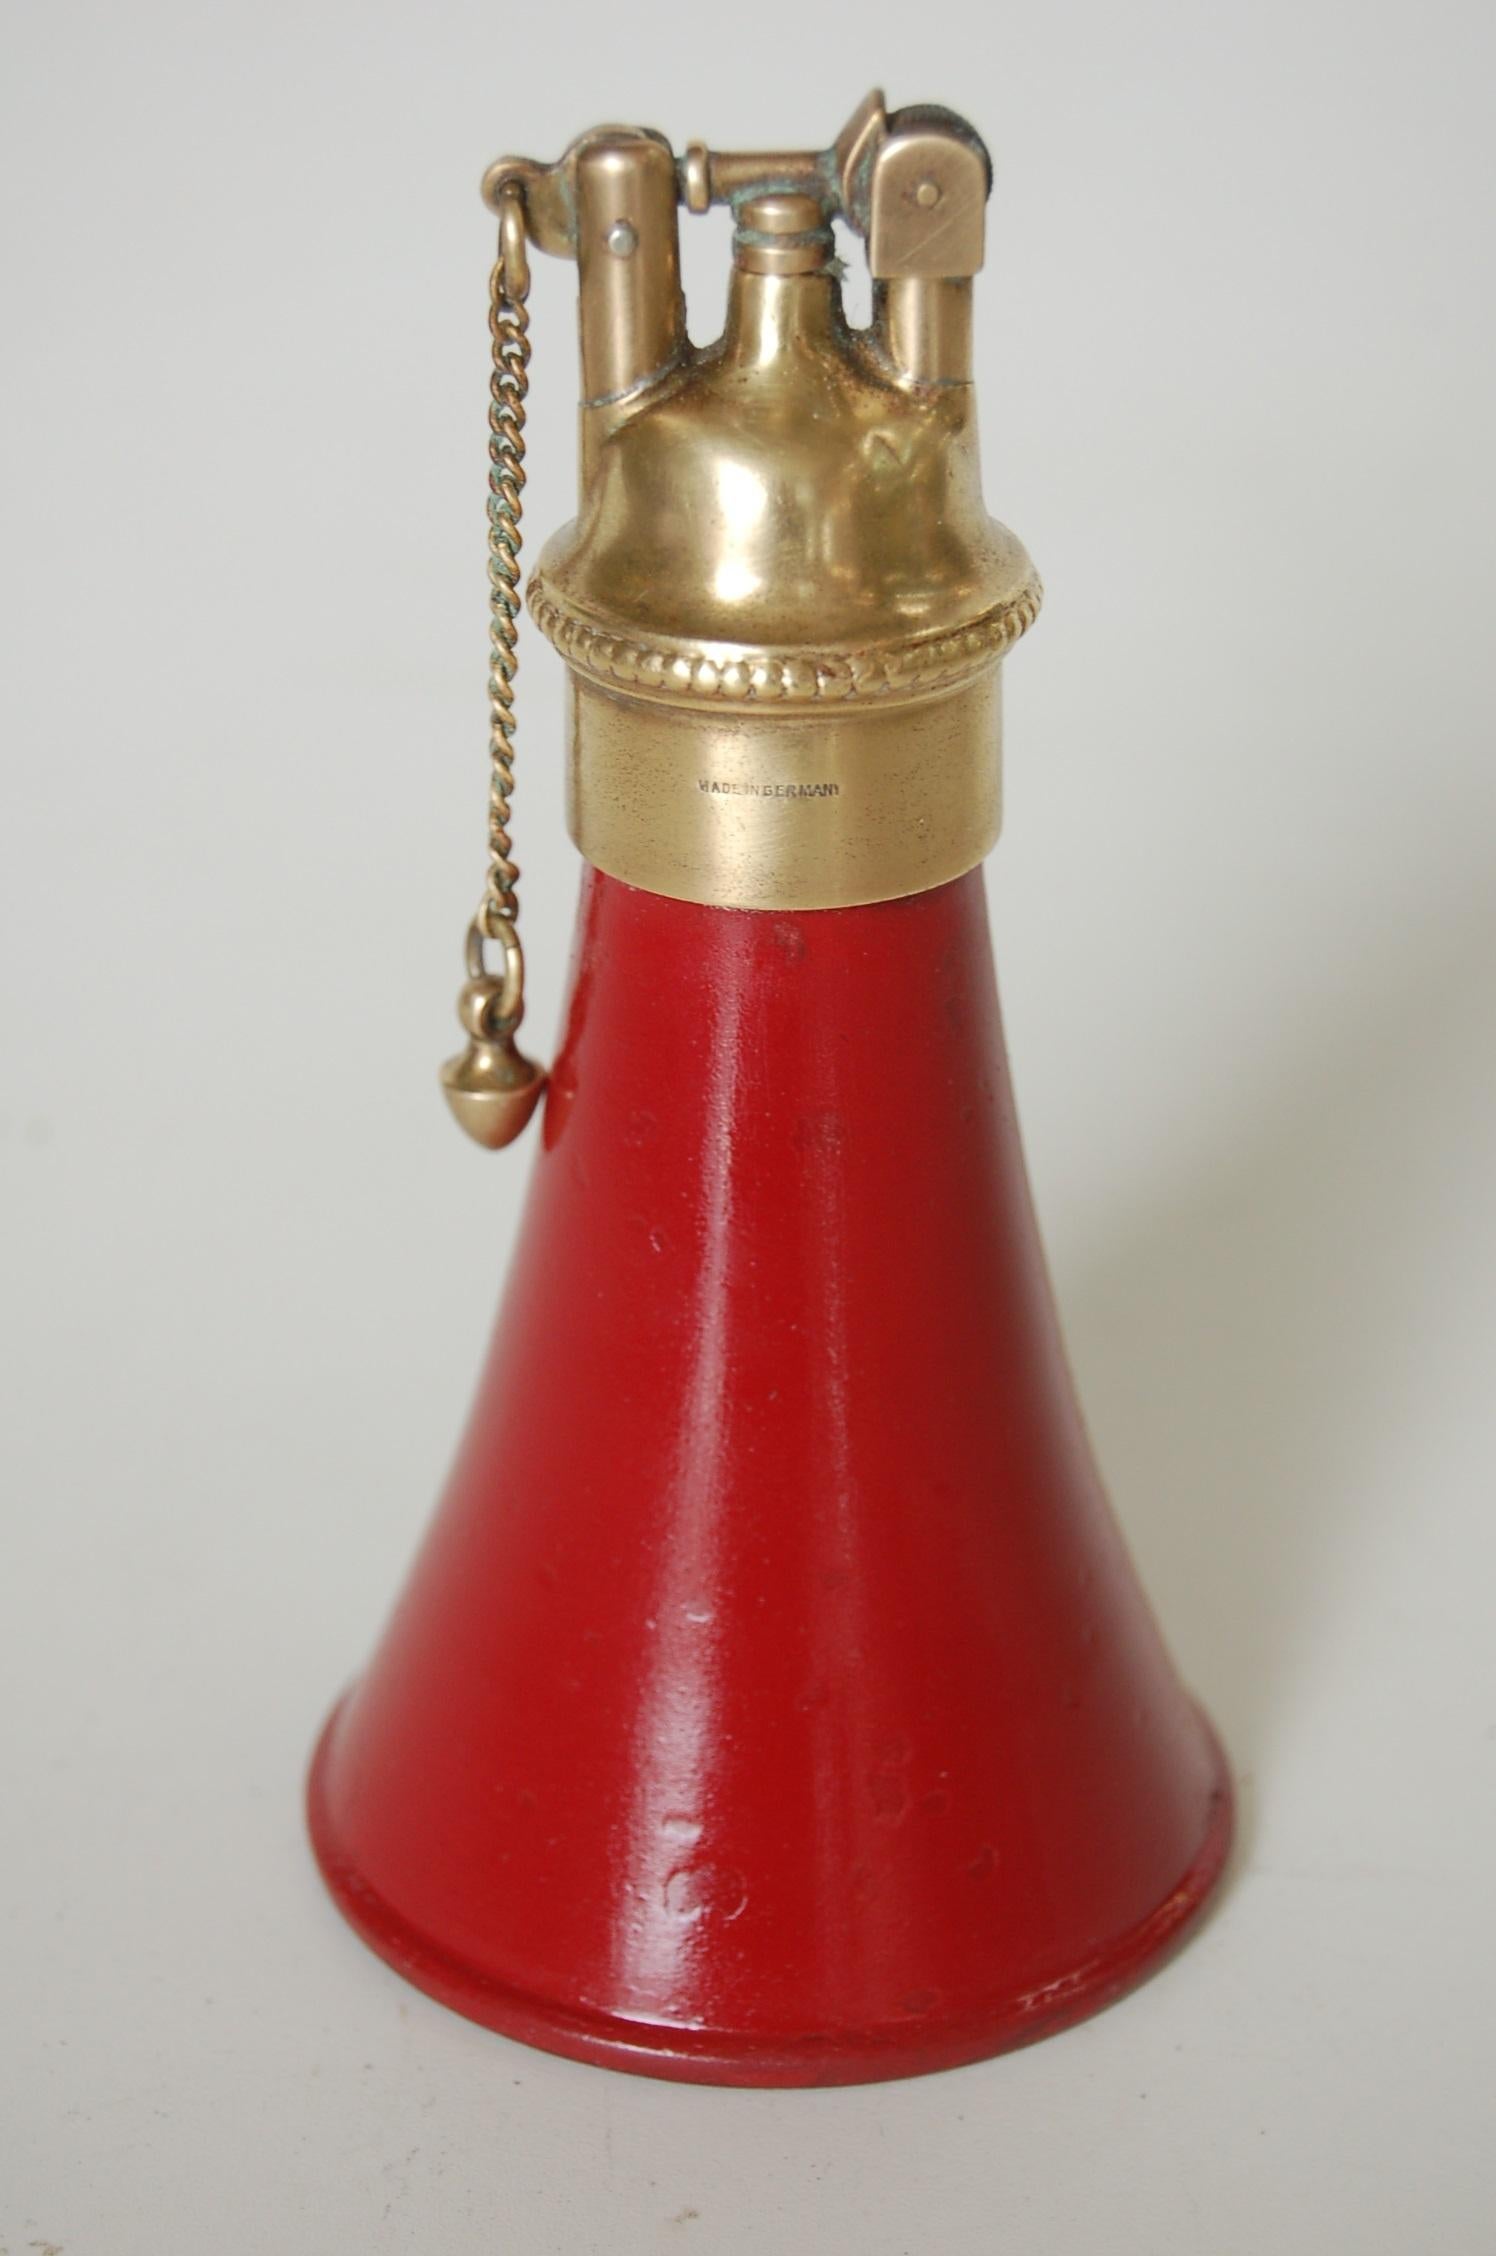 Benzinfeuerzeug aus Messing und rotem Horn in Form eines Tischfeuerzeugs mit Zugkette, hergestellt in Deutschland.

Maße: 5.5